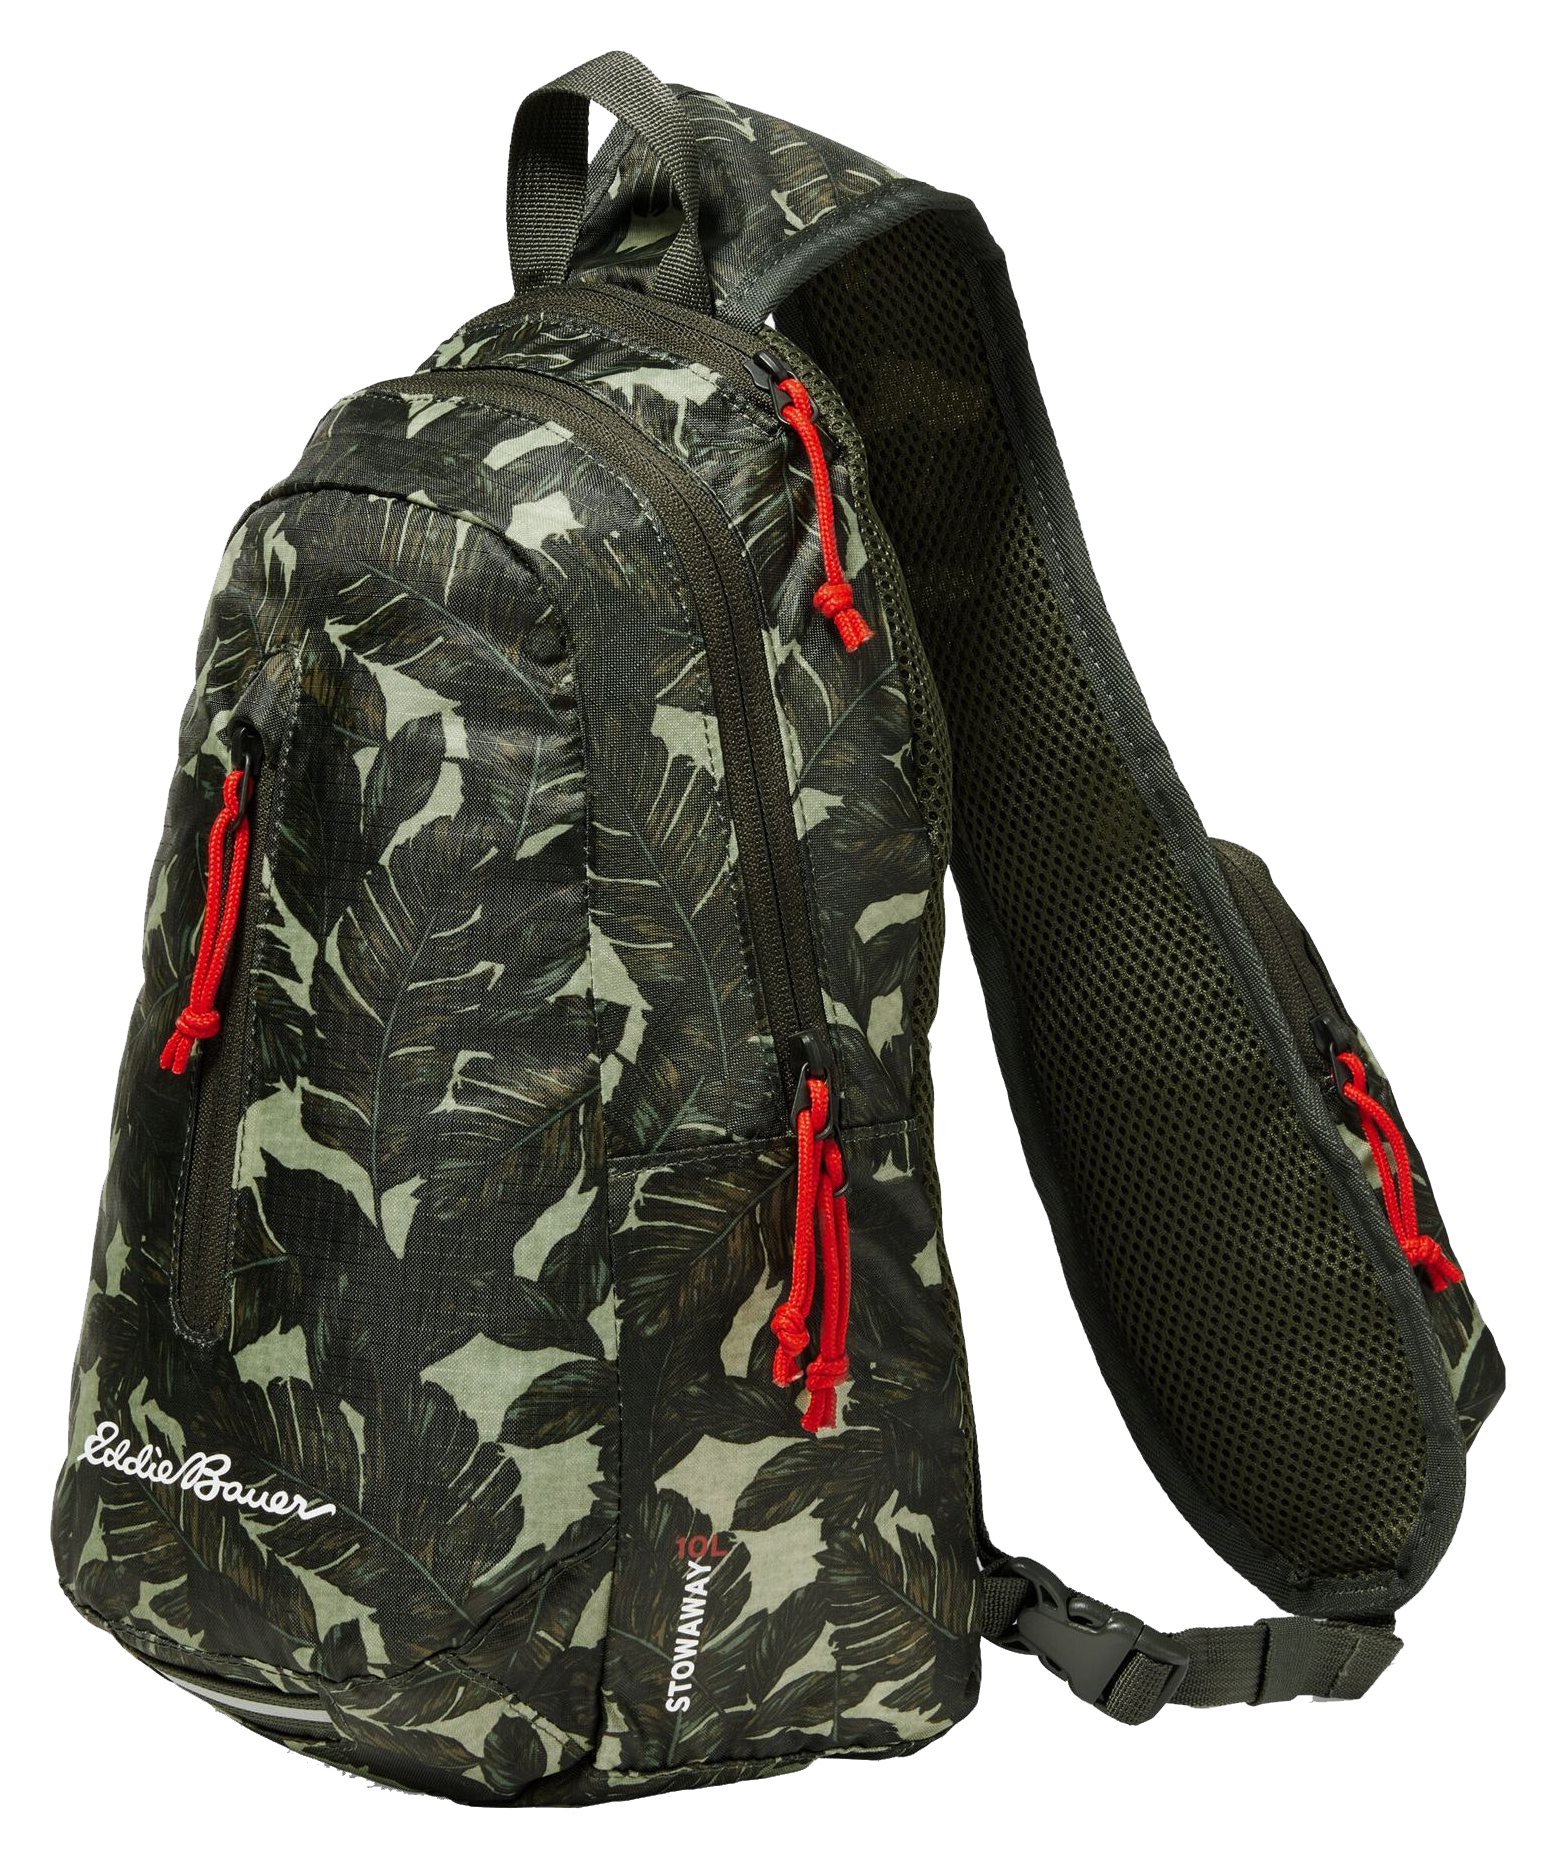 Eddie Bauer Stowaway Packable Sling 3.0 Backpack - 10L - Dark Loden